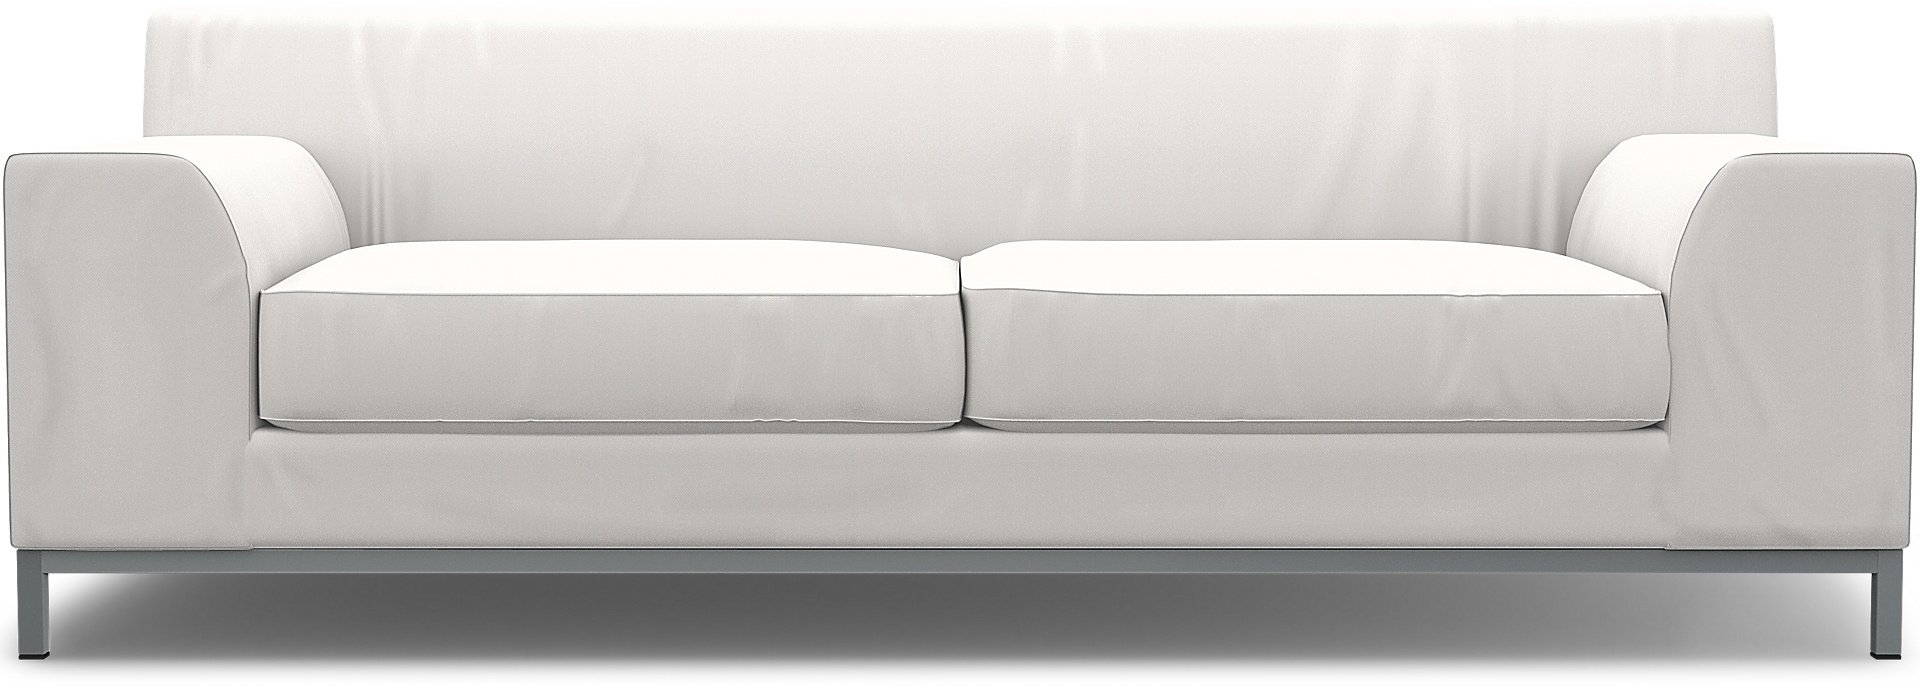 IKEA - Kramfors 3 Seater Sofa Cover, Soft White, Linen - Bemz